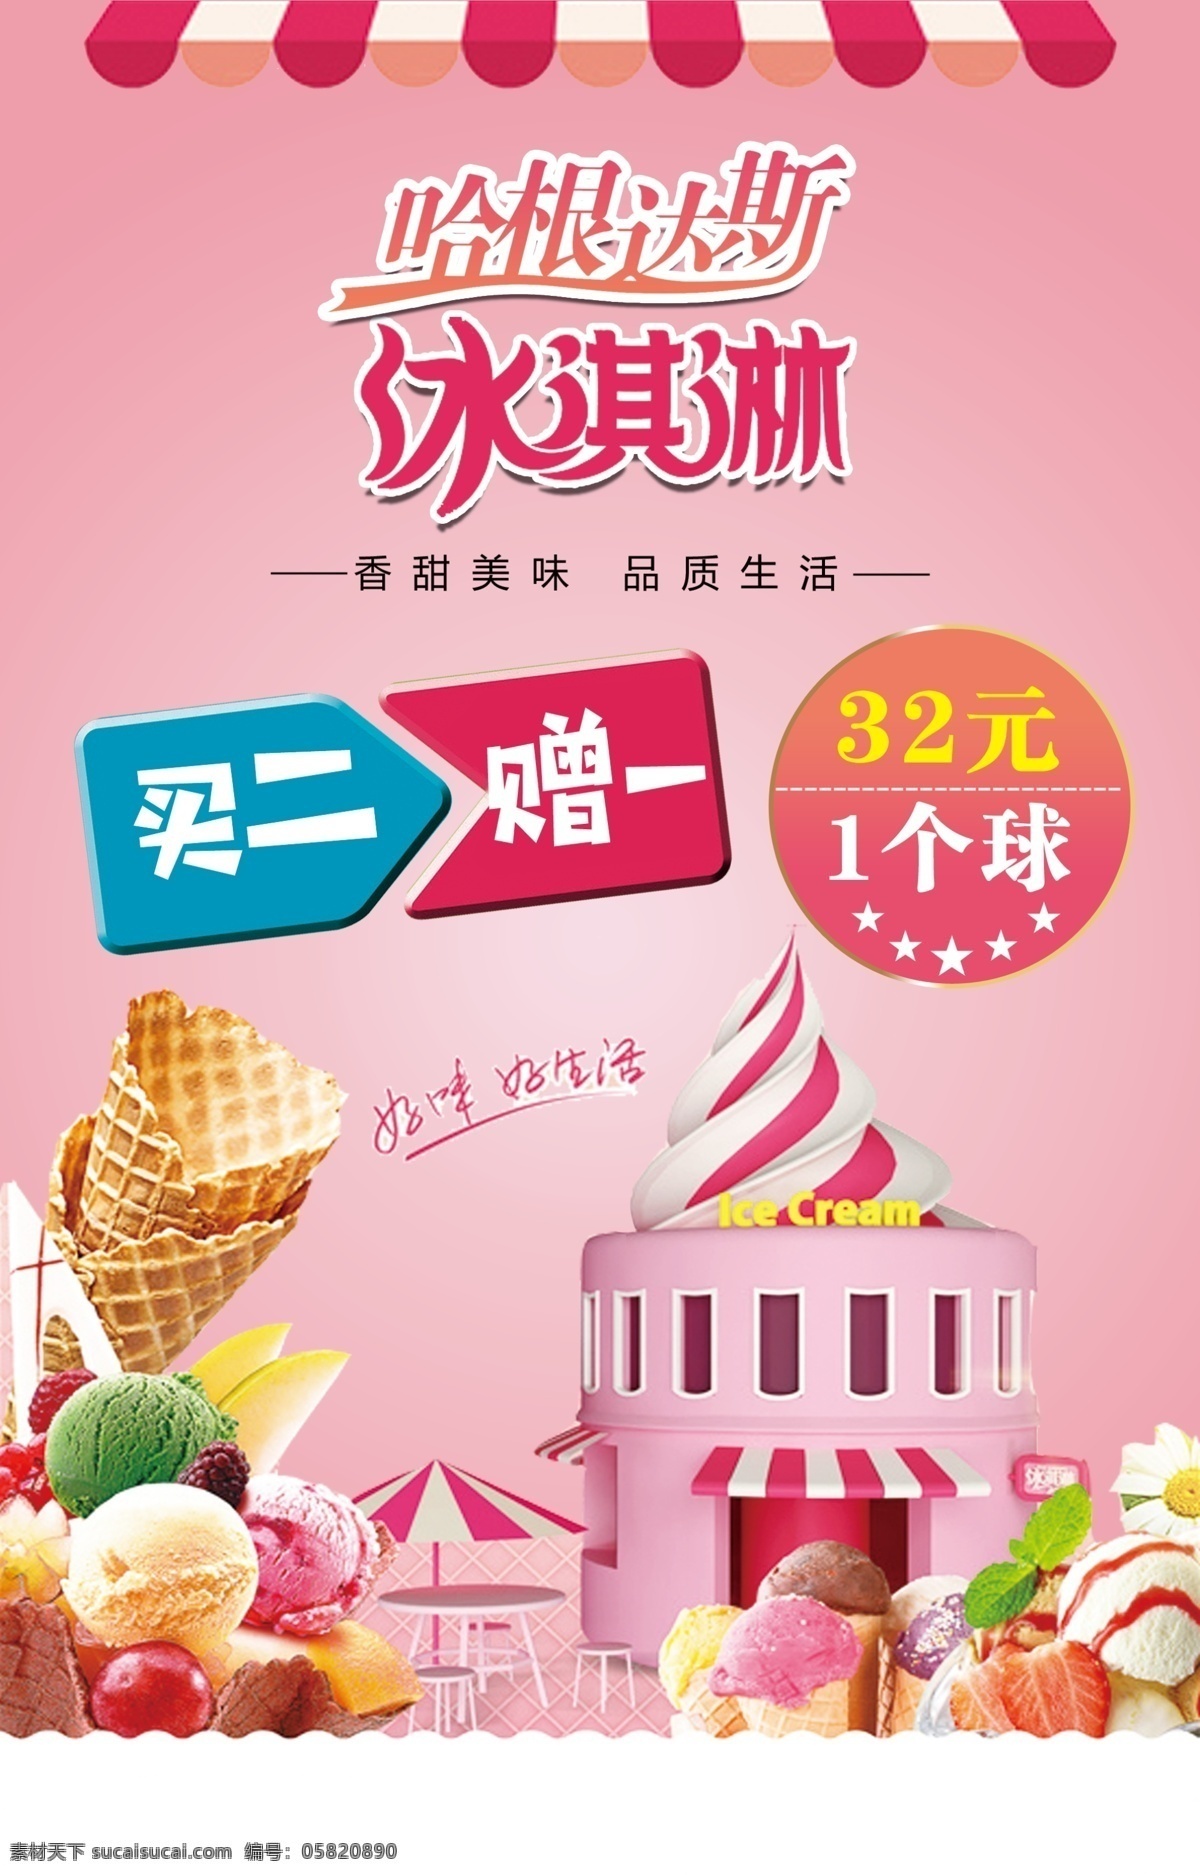 冰淇淋 活动价 买二赠一 冷饮 冰糕 粉色 水果 哈根达斯